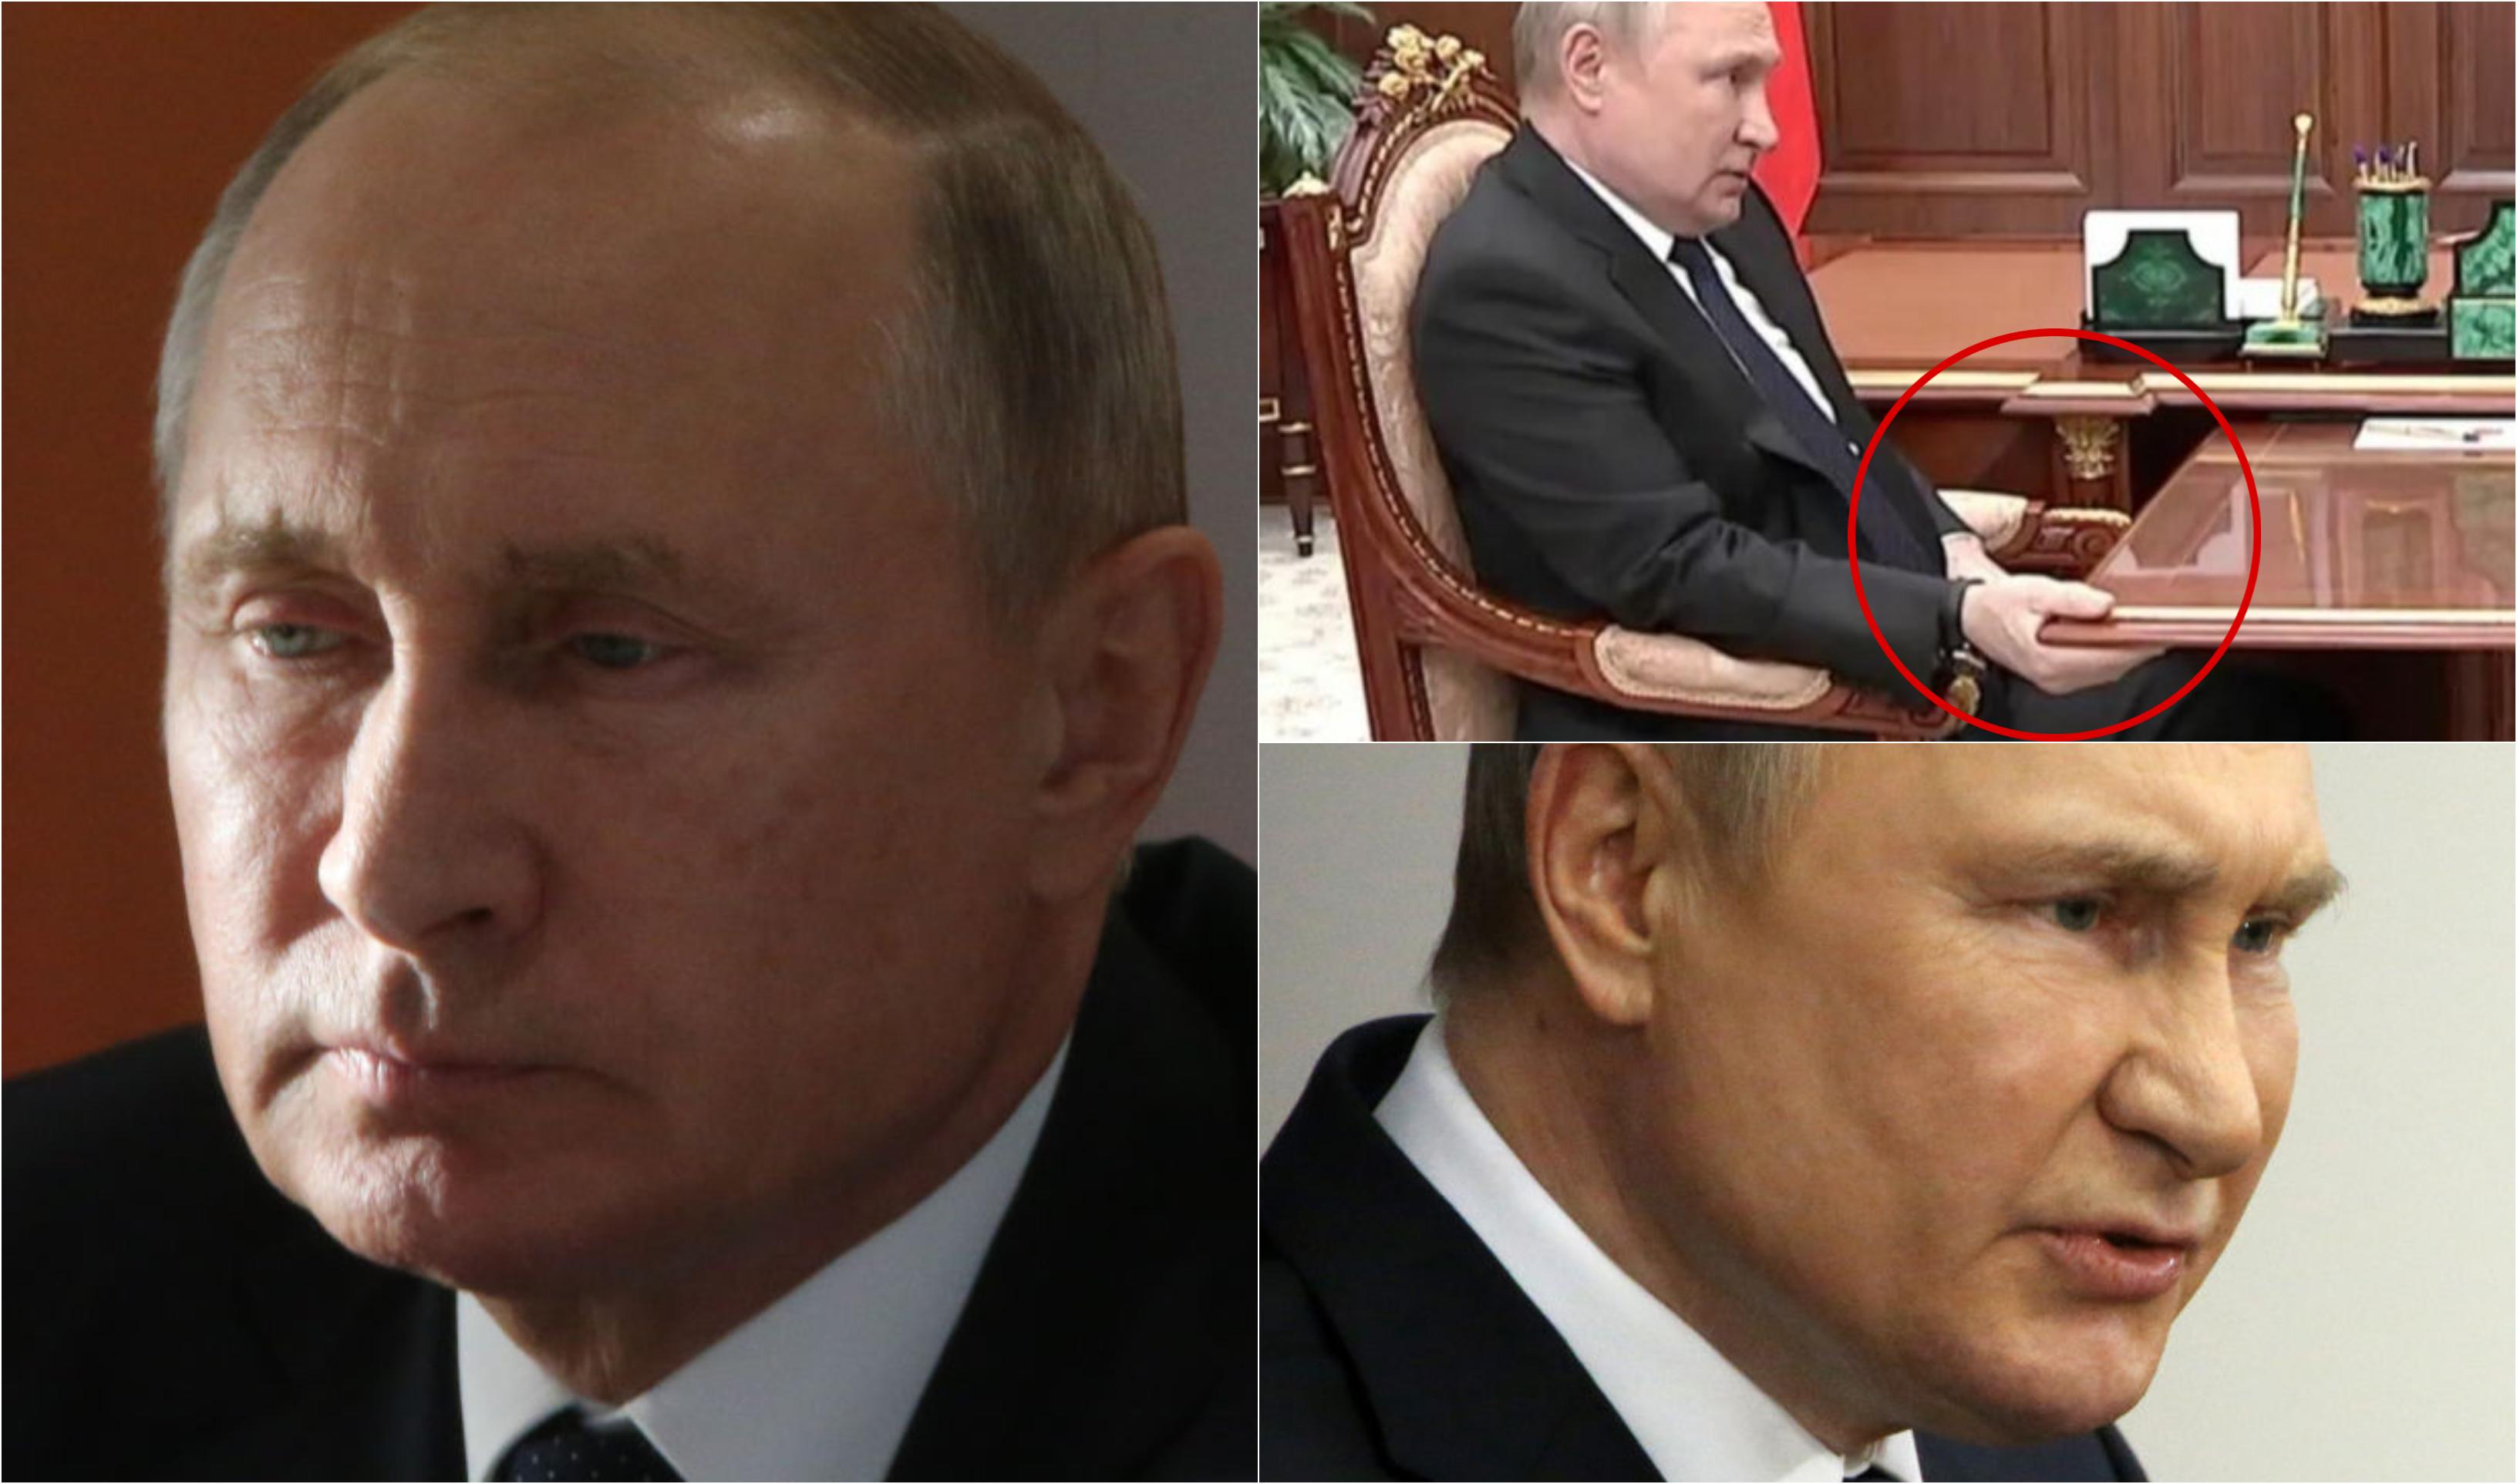 Vladimir Putin ar fi tratat cu sânge de căprioară și ar fi însoţit de neurochirurgi la fiecare pas. Moscova ar vrea să șteargă tot|EpicNews